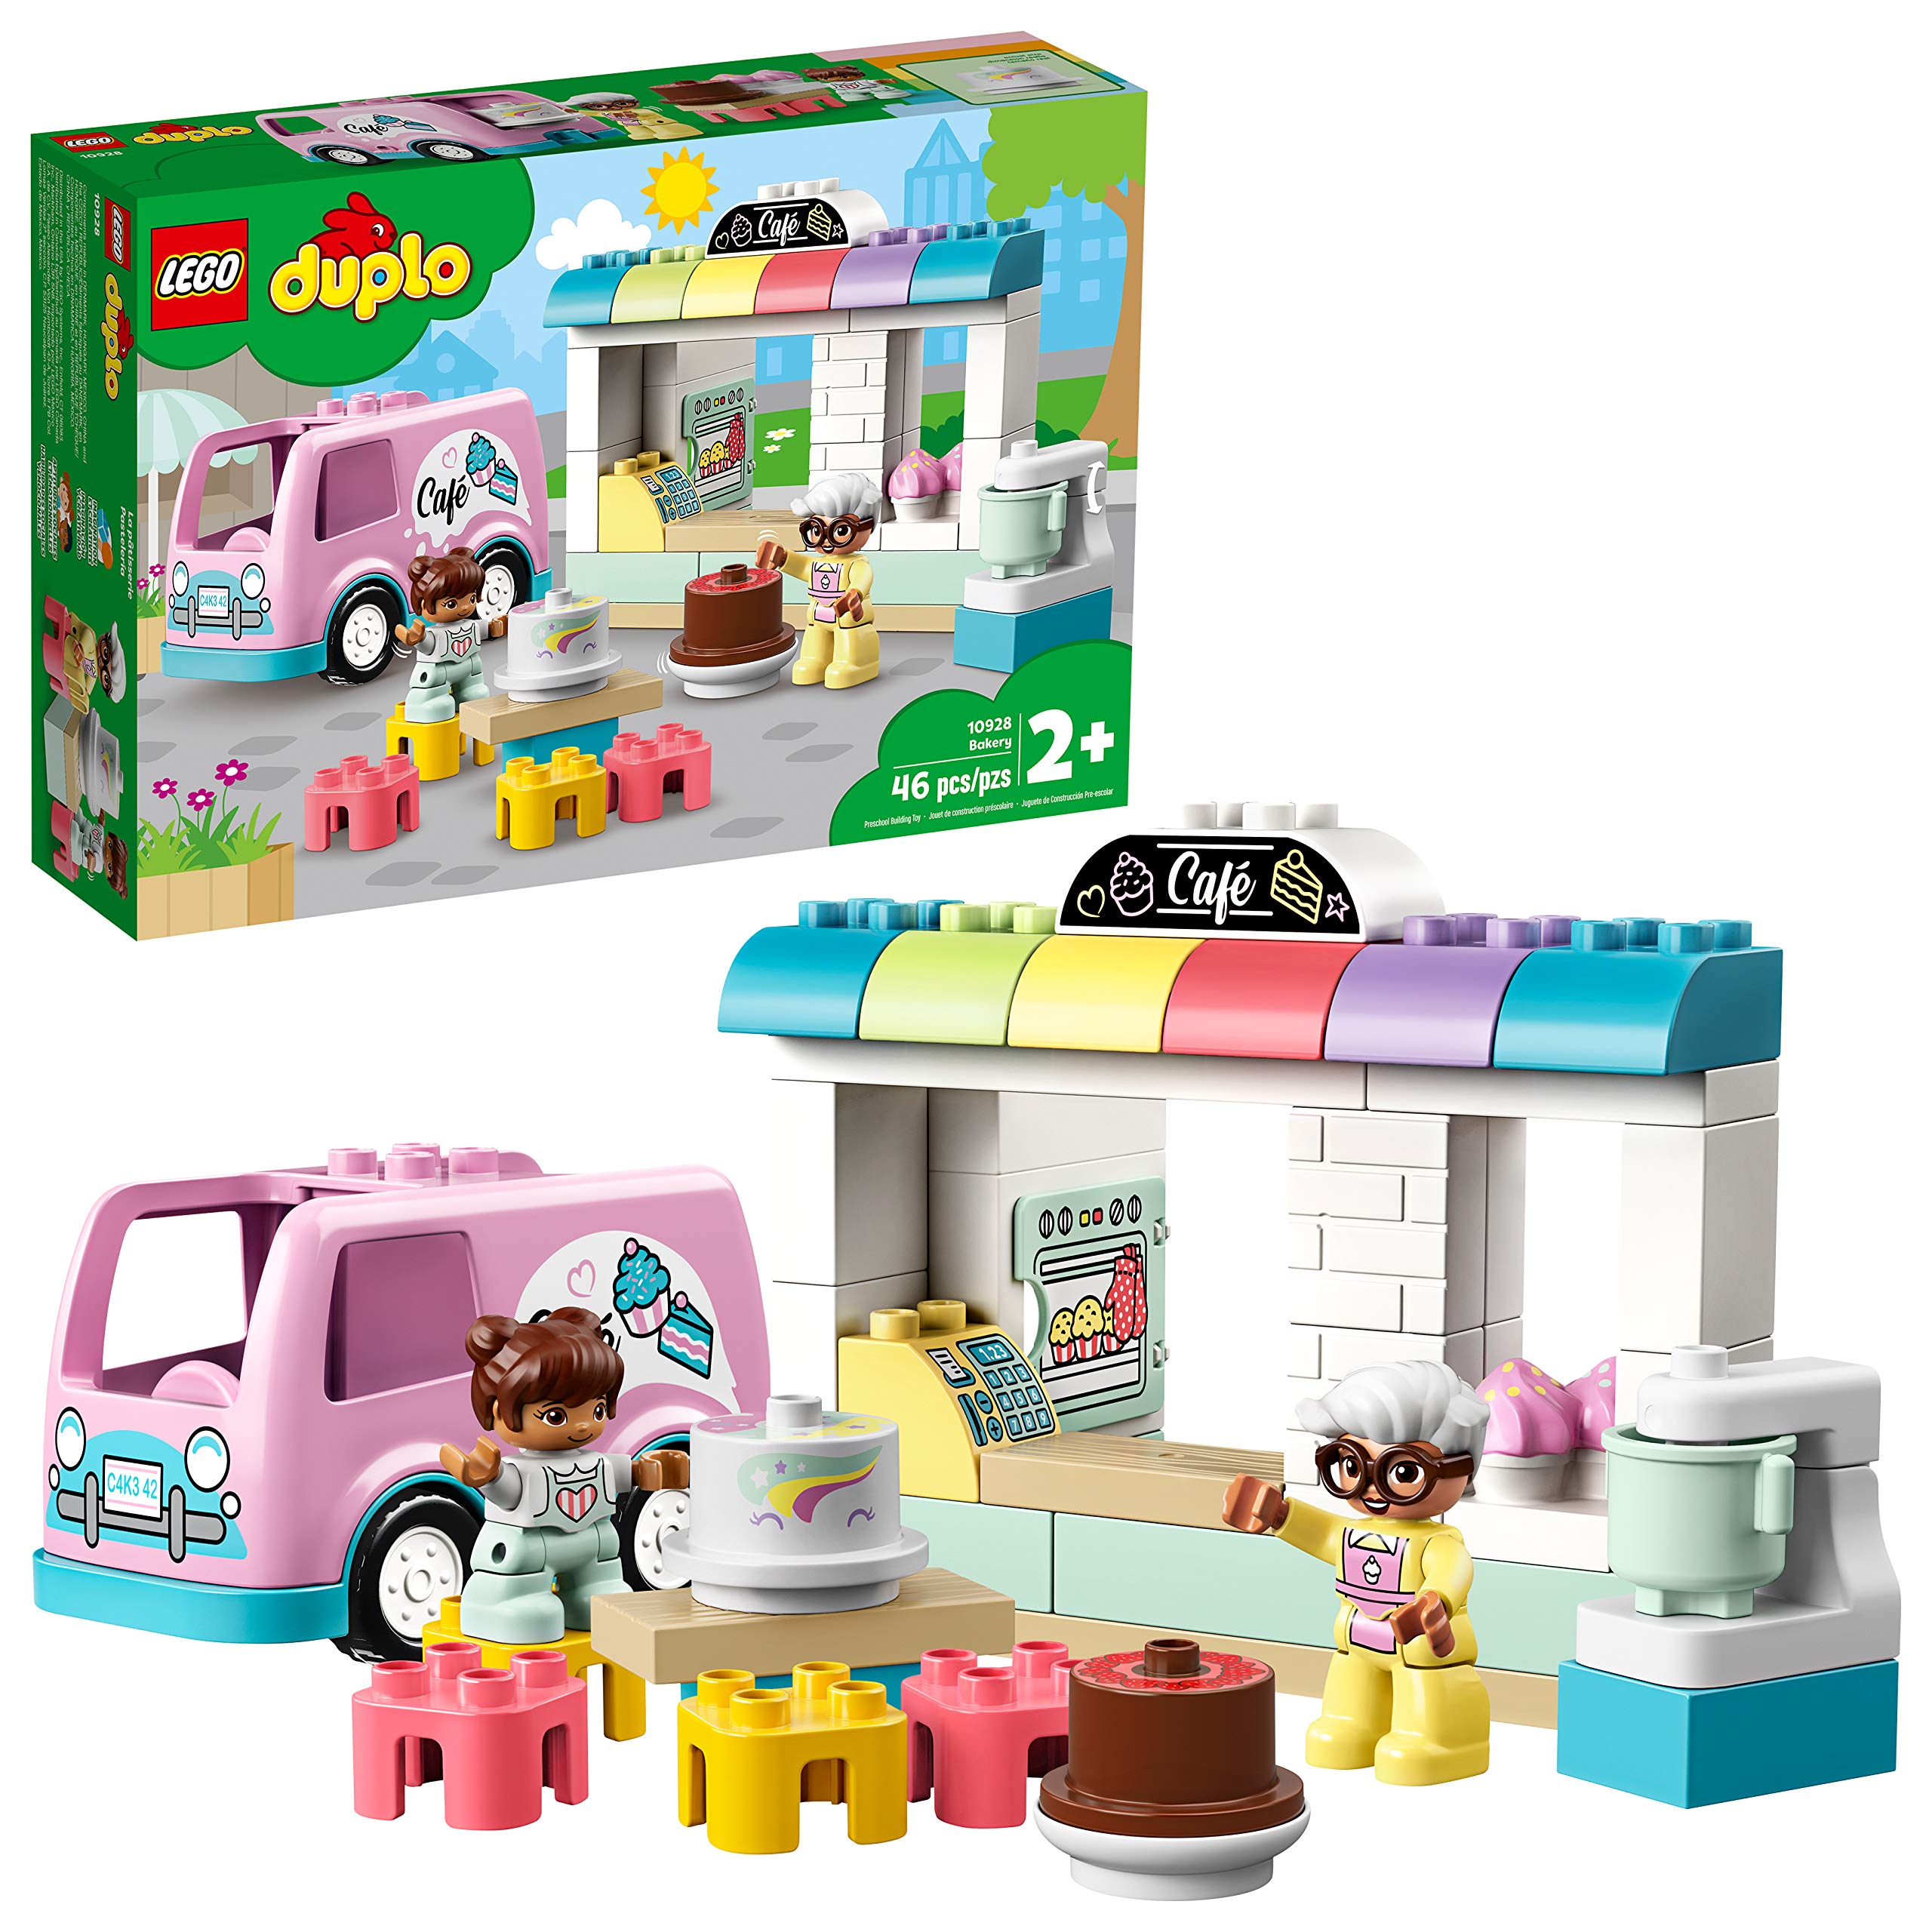 LEGO 10928 DUPLO Tortenbäckerei Spielset mit Café-Wagen, Kuchen und Cupcakes, große Bausteine für Kleinkinder ab 2 Jahren